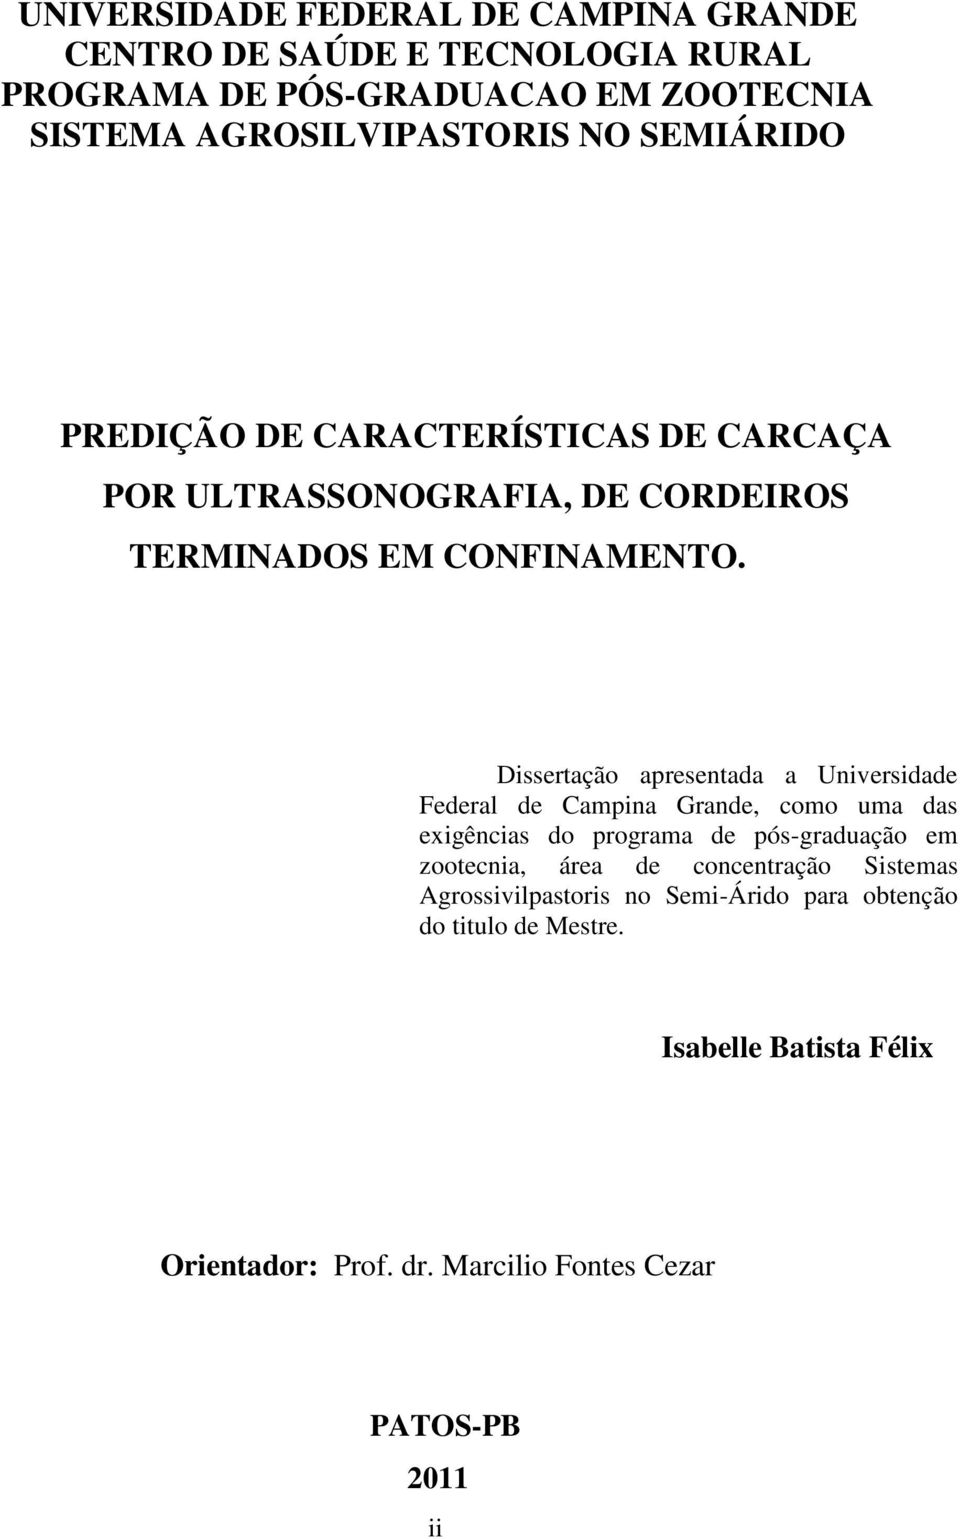 Dissertação apresentada a Universidade Federal de Campina Grande, como uma das exigências do programa de pós-graduação em zootecnia, área de